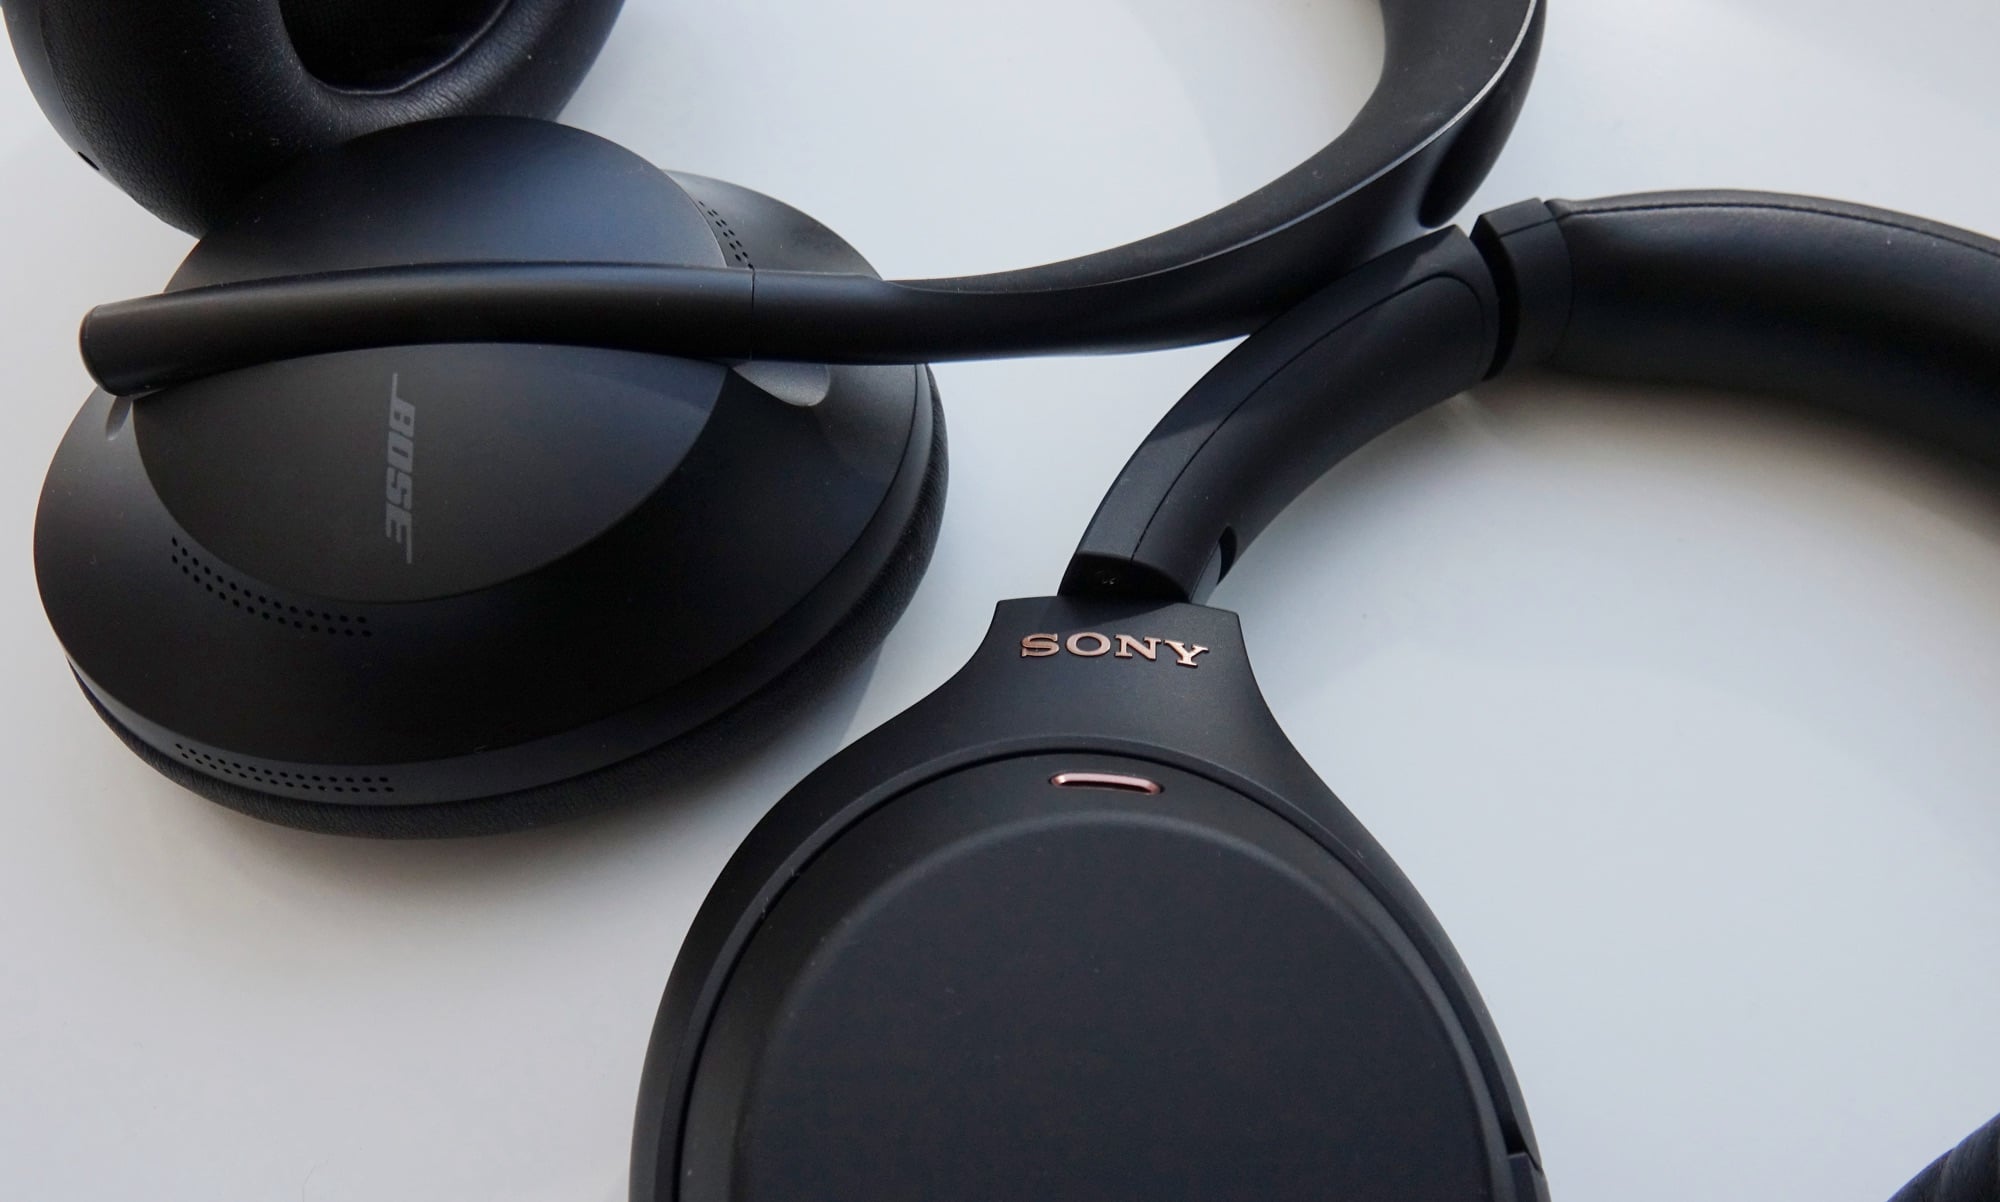 Sony WH-1000XM4 headphones next to the Bose 700 Headphones